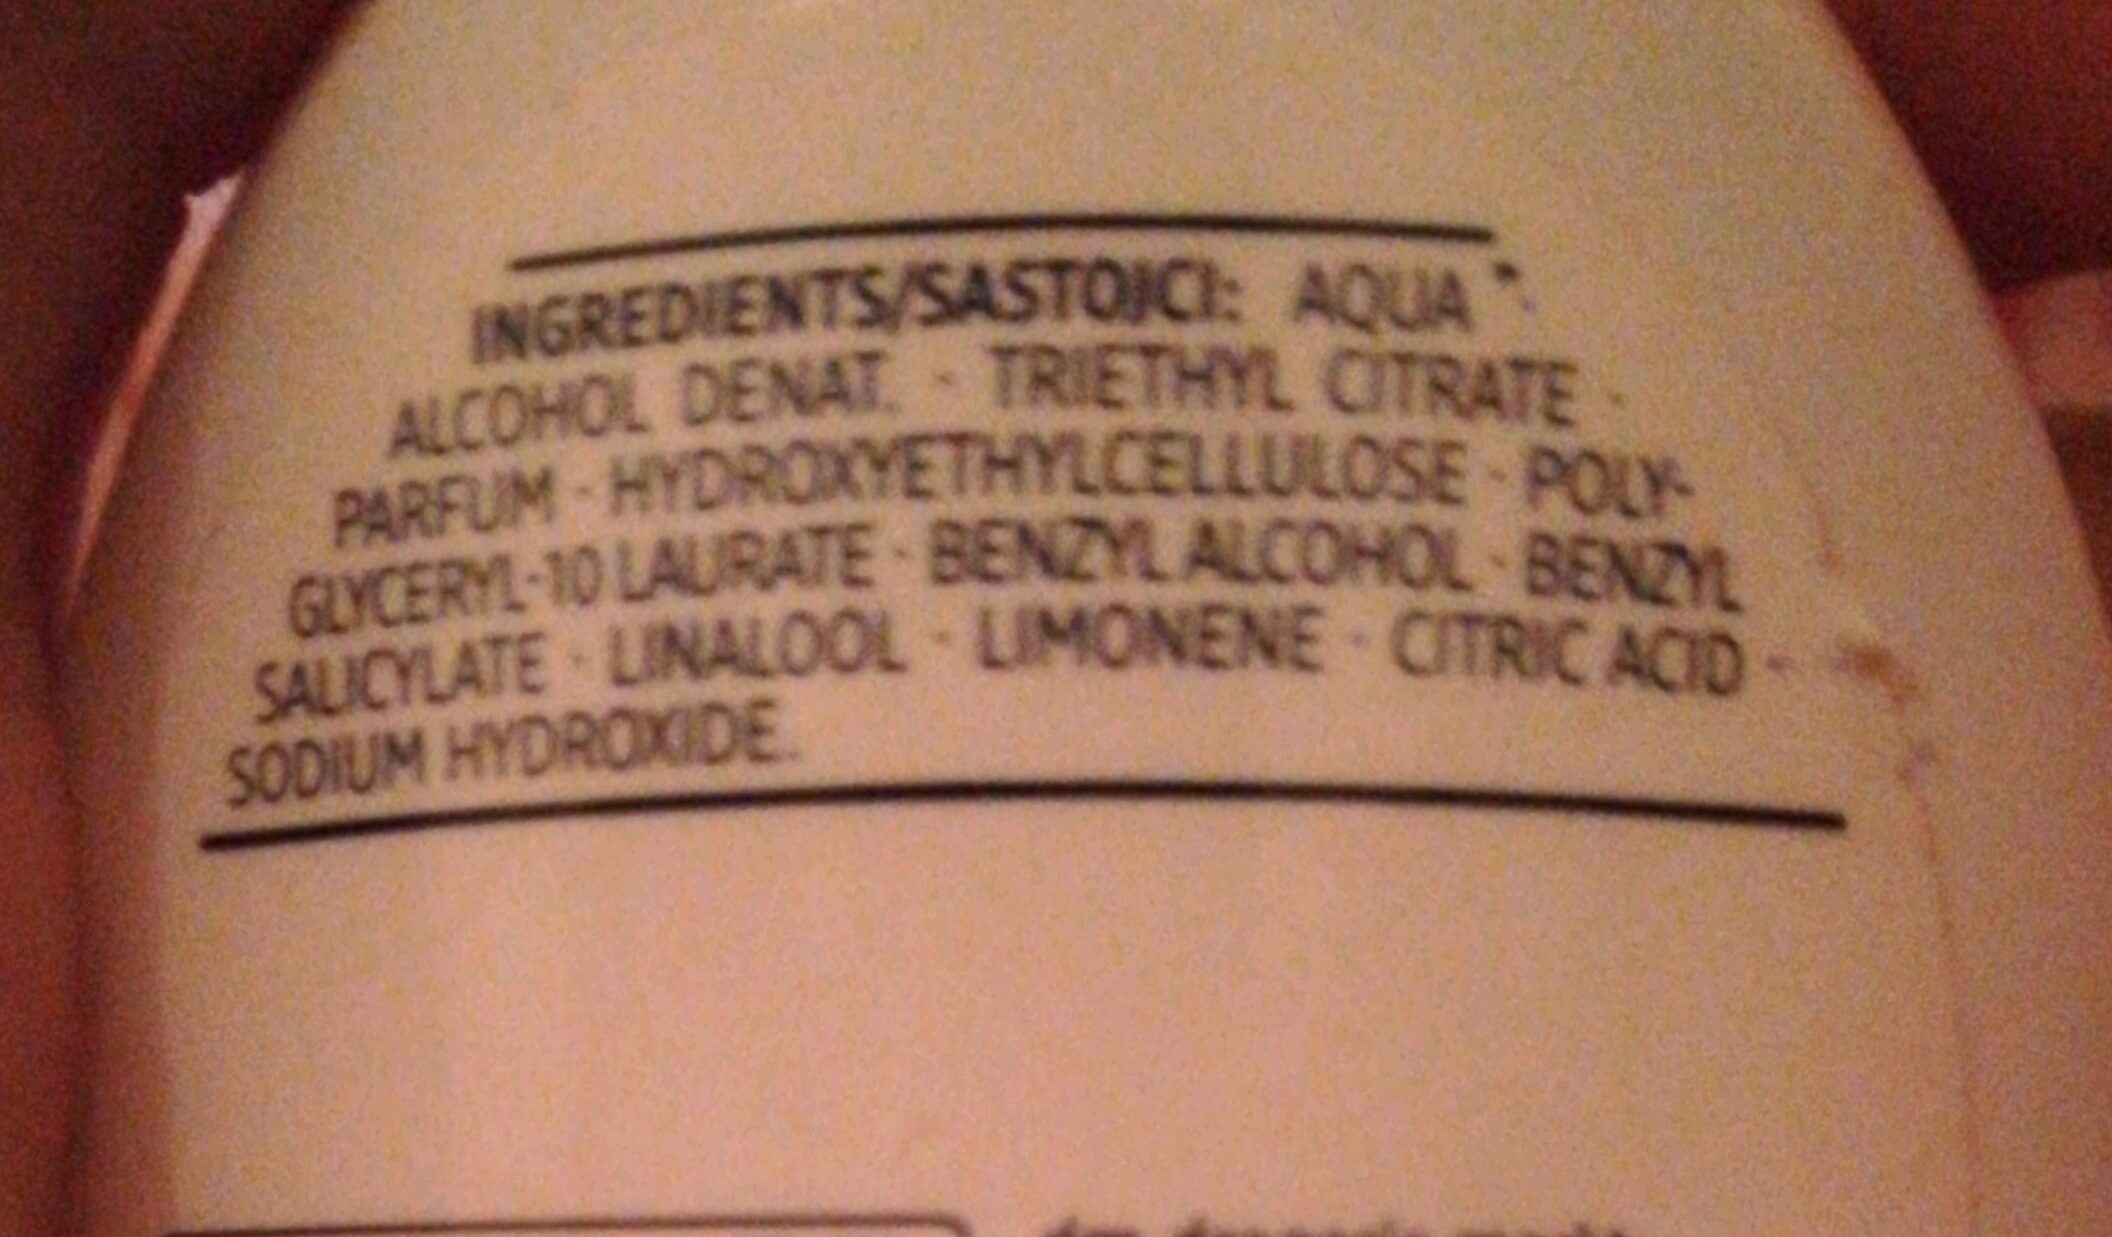 deodorant - Ingredientes - fr